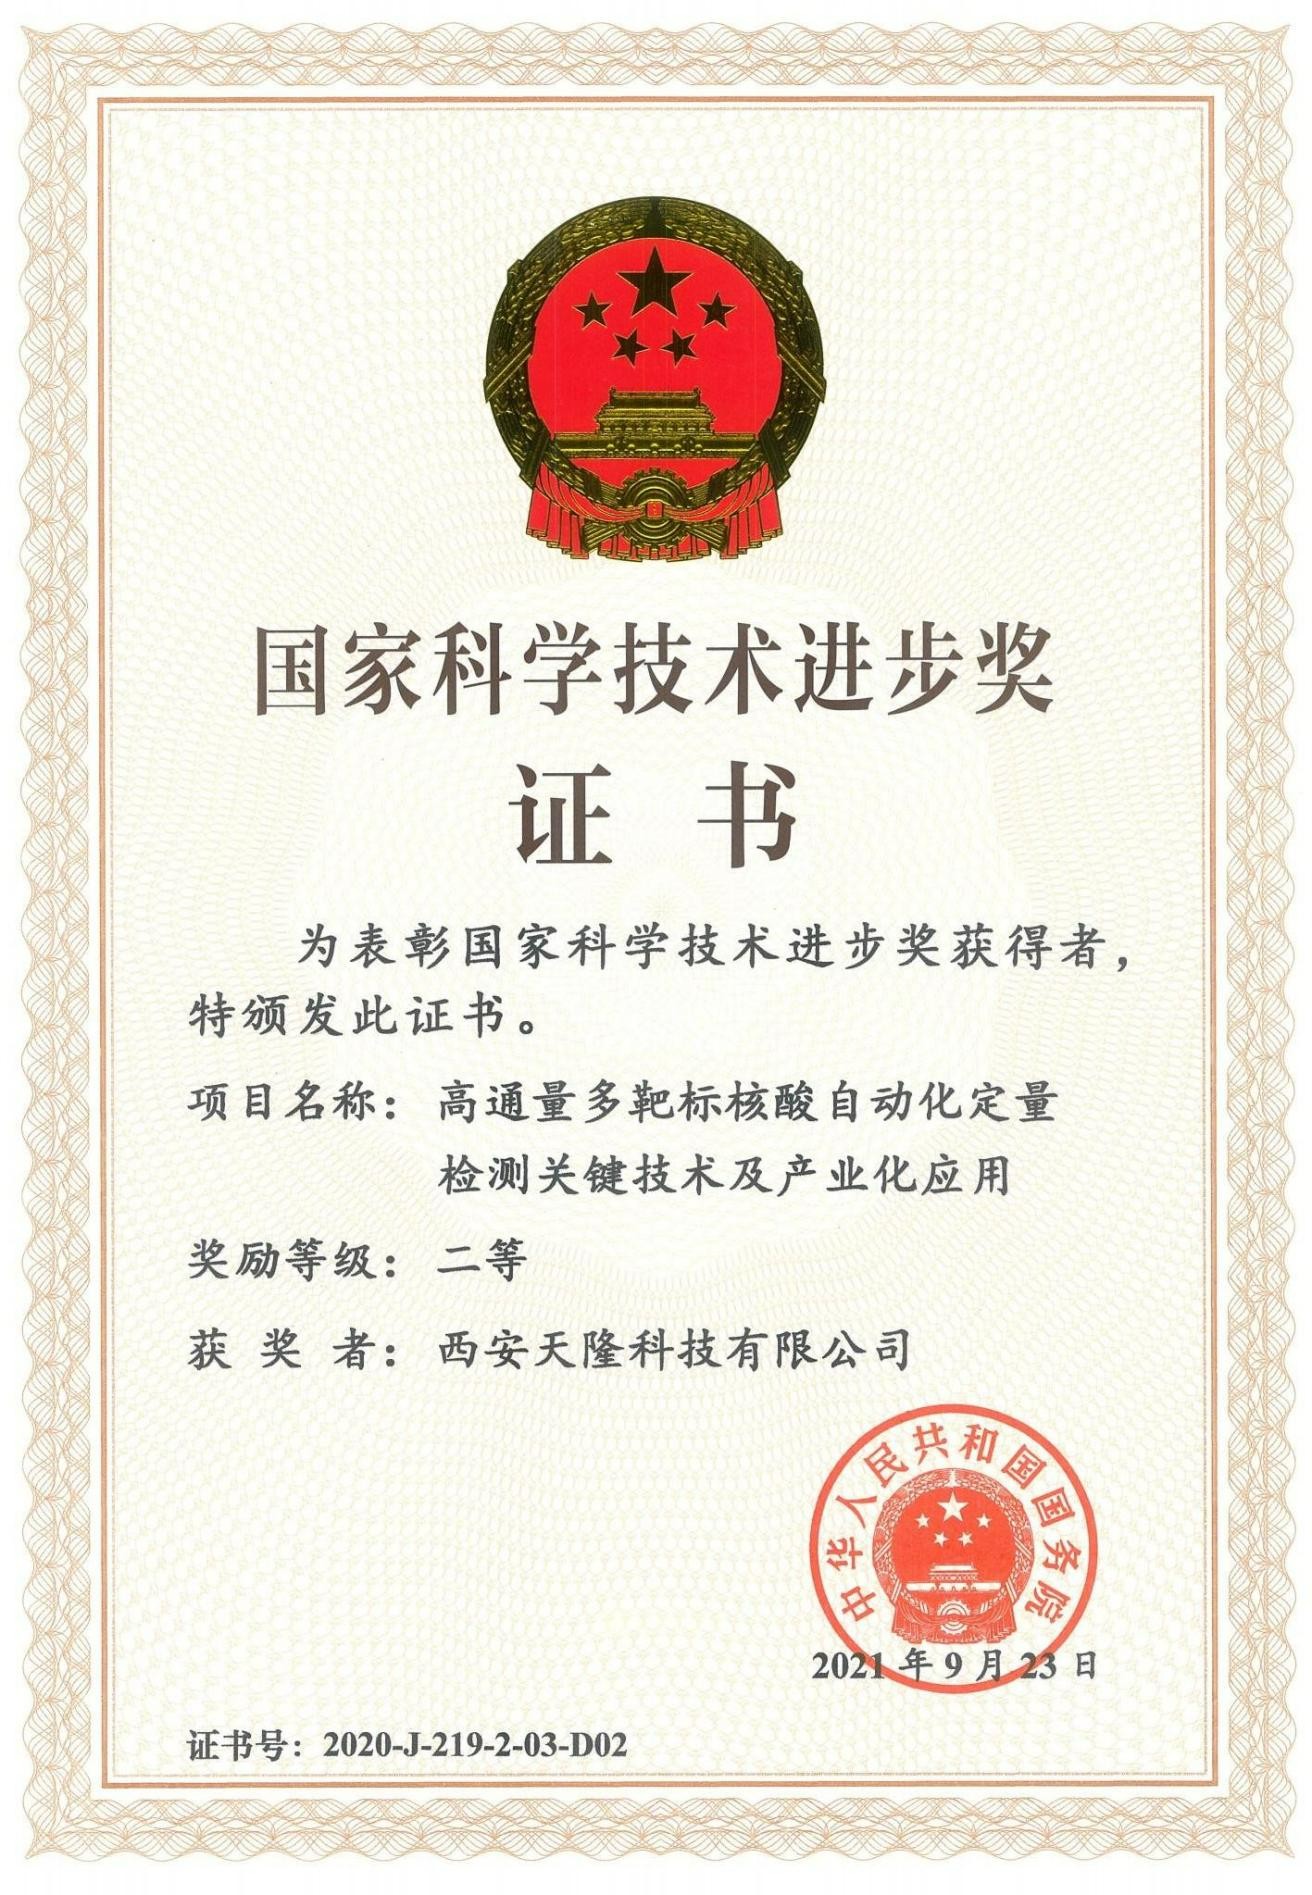 جائزة الصين الوطنية للتقدم العلمي والتكنولوجي (Xi''an Tianlong)